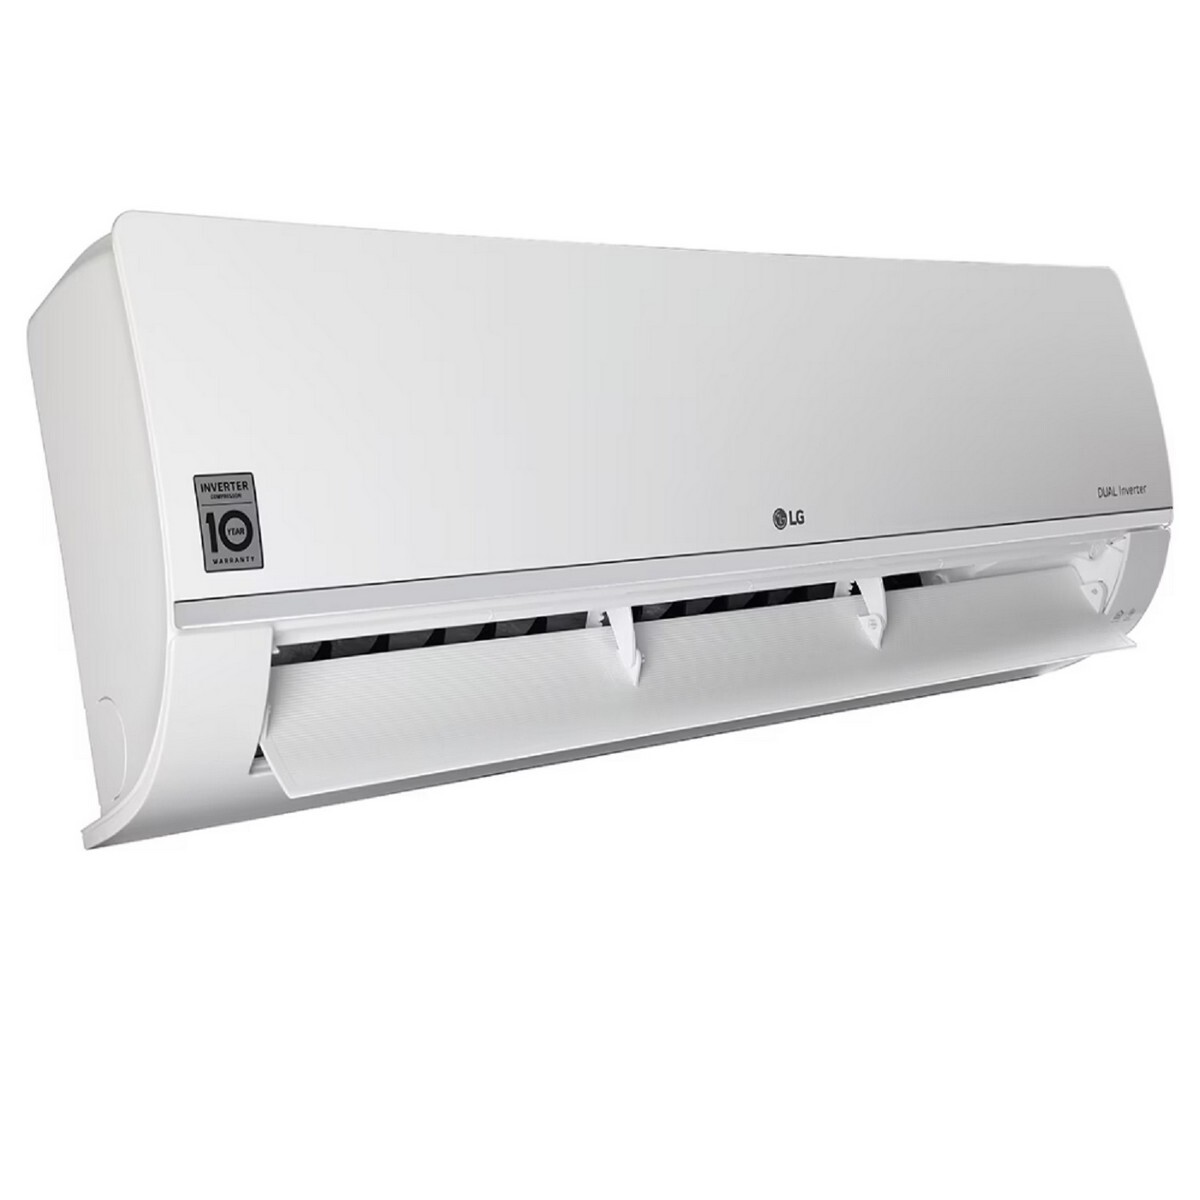 LG Inverter Air Conditioner RS-Q14SWZE 1Ton 5*